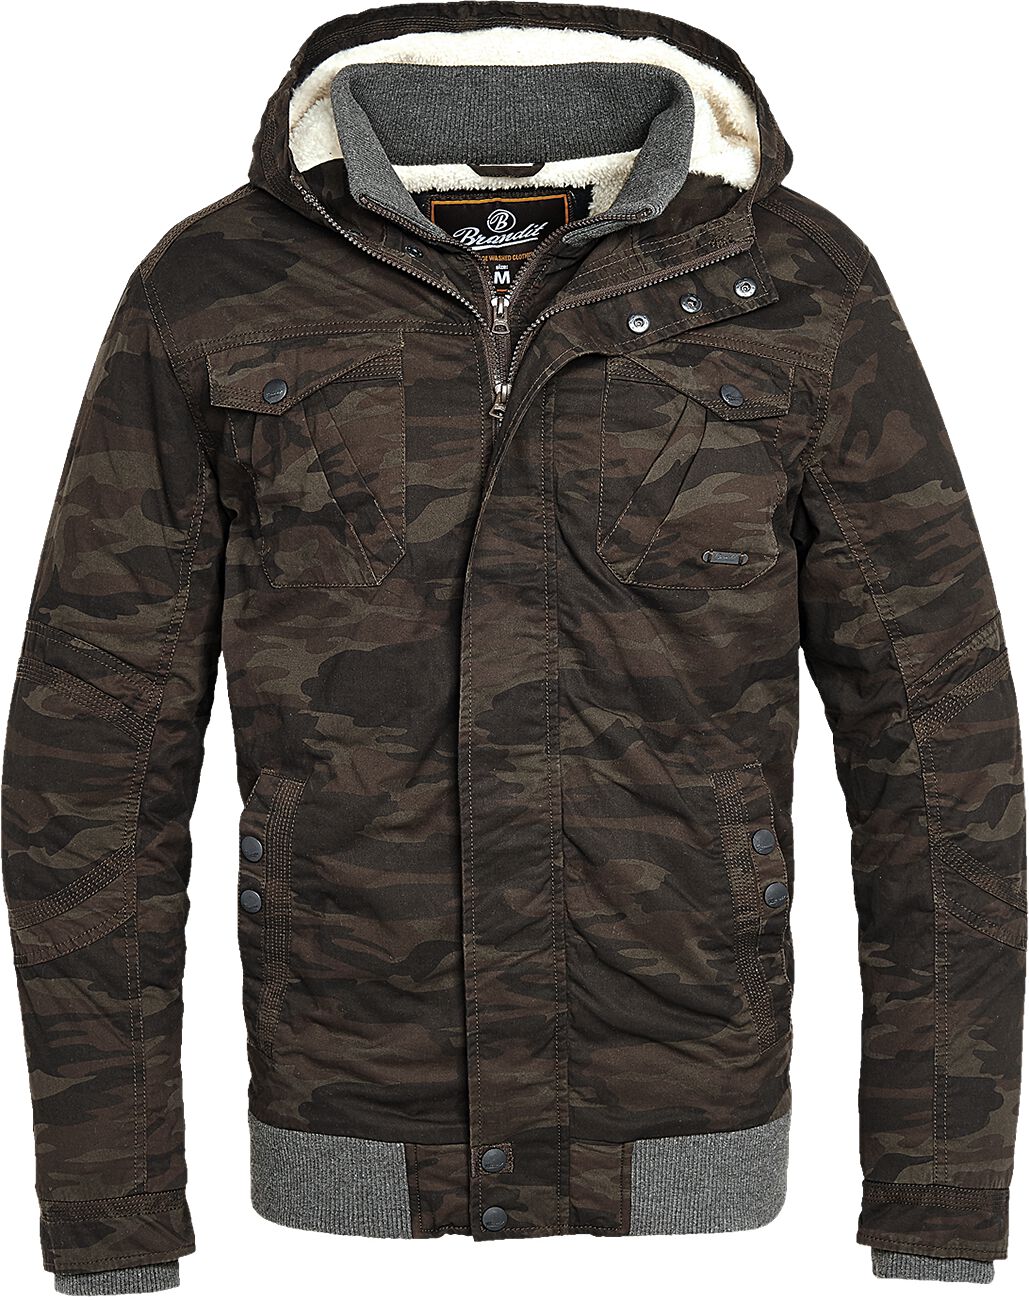 Brandit - Camouflage/Flecktarn Winterjacke - Parkmont Jacket - S bis 5XL - für Männer - Größe XXL - camouflage